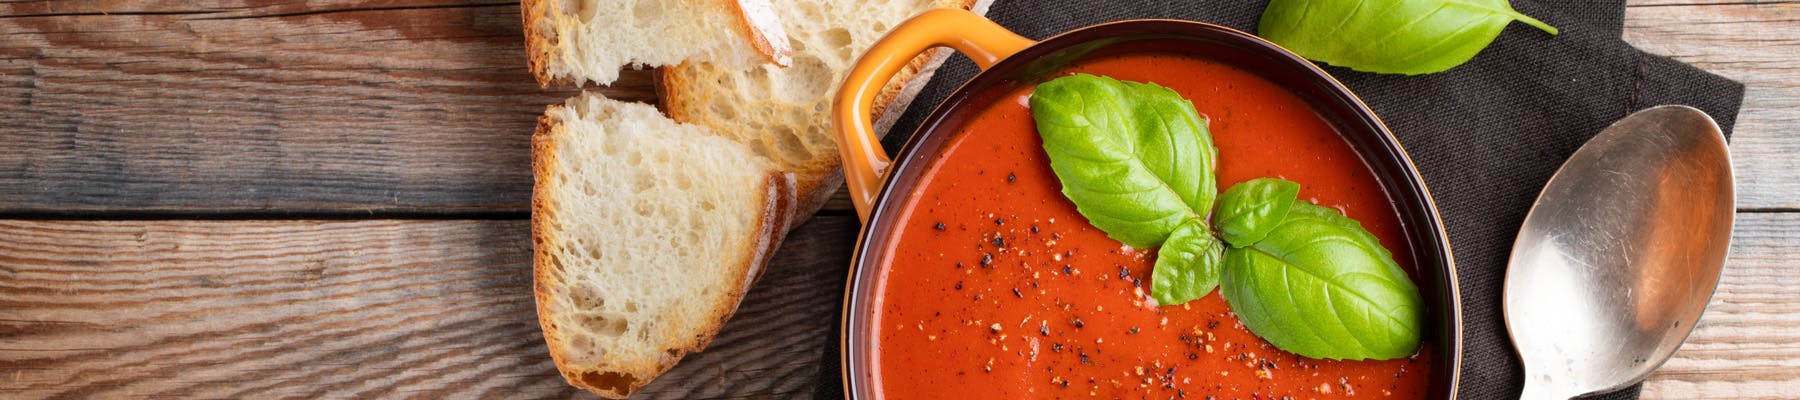 Leggera e ben digeribile: zuppa di pomodoro, una delizia primaverile per il palato 